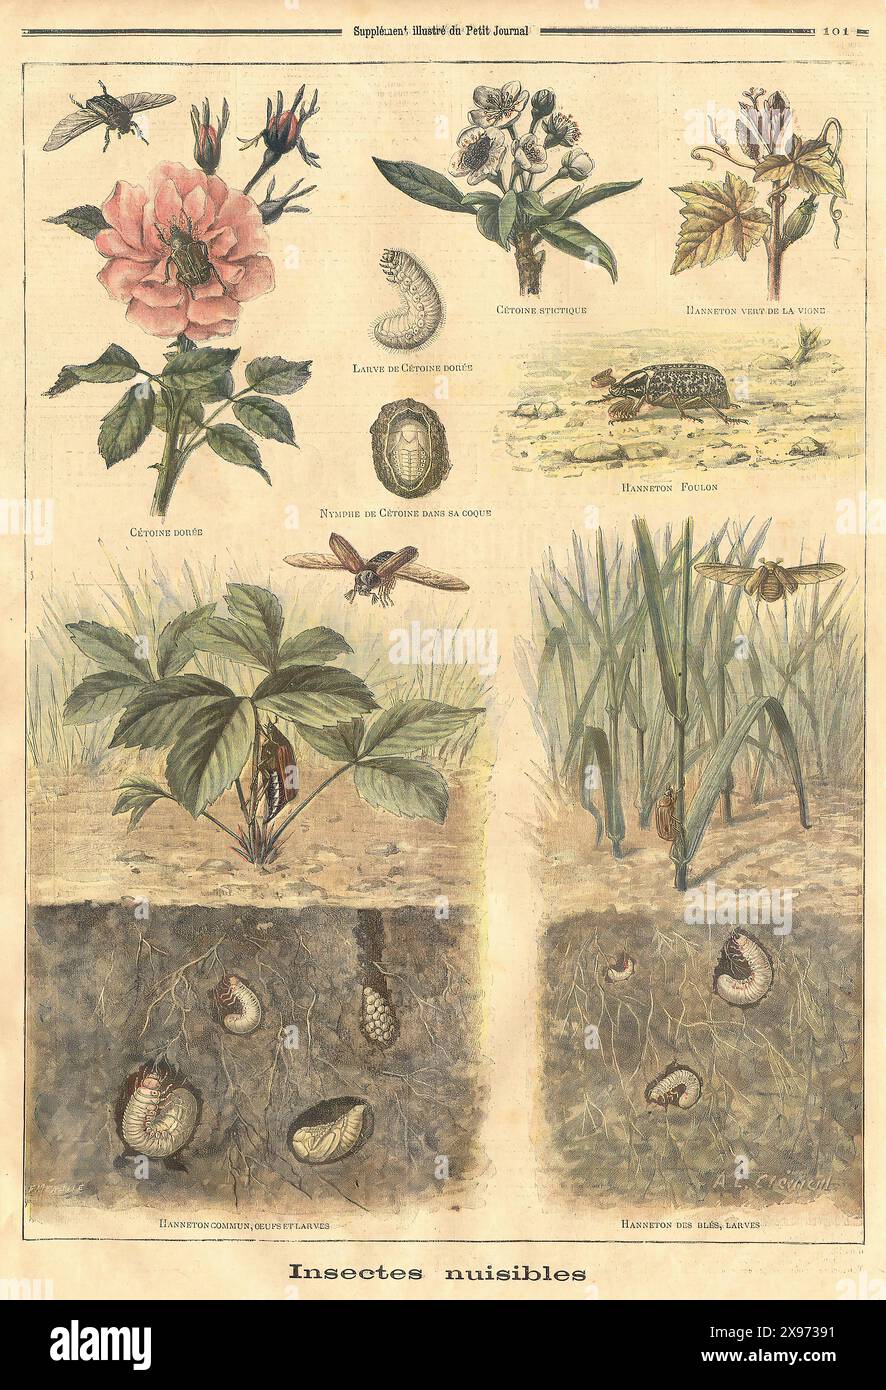 'Insectes nuisibles' - Auszug aus 'Le Petit Journal' - französisches Illustrationsmagazin - dieses Bild zeigt verschiedene schädliche Insekten und ihre Lebensstadien, mit Abbildungen der Insekten, Larven und der Schäden, die sie Pflanzen verursachen. Die Abbildungen sind detailliert, wobei der Schwerpunkt auf der wissenschaftlichen Darstellung der Themen liegt. Stockfoto